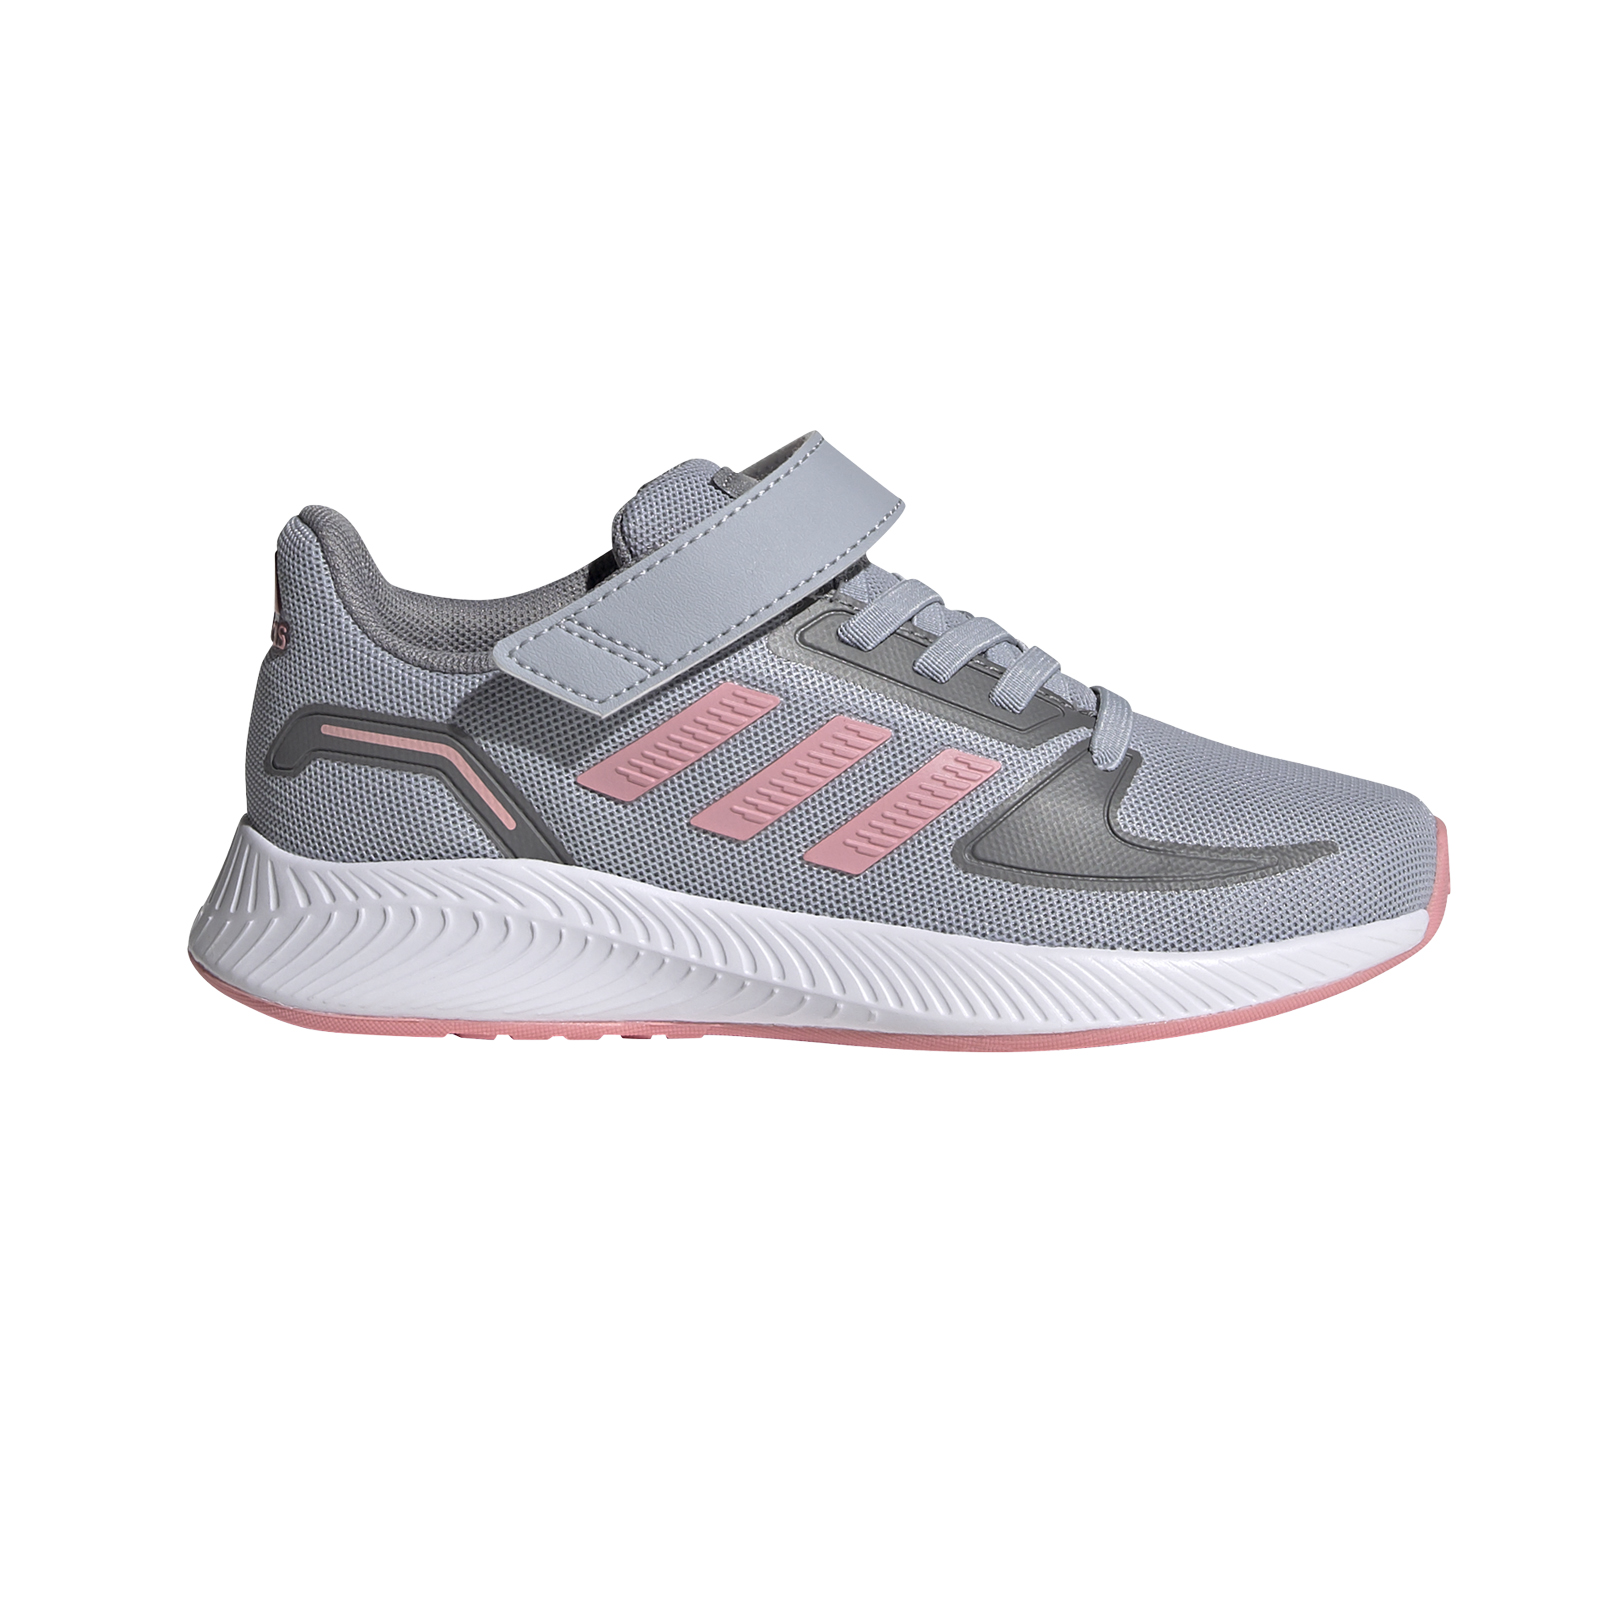 adidas - RUNFALCON 2.0 C - HALSIL/SUPPOP/GRETHR Παιδικά > Παπούτσια > Αθλητικά > Παπούτσι Low Cut